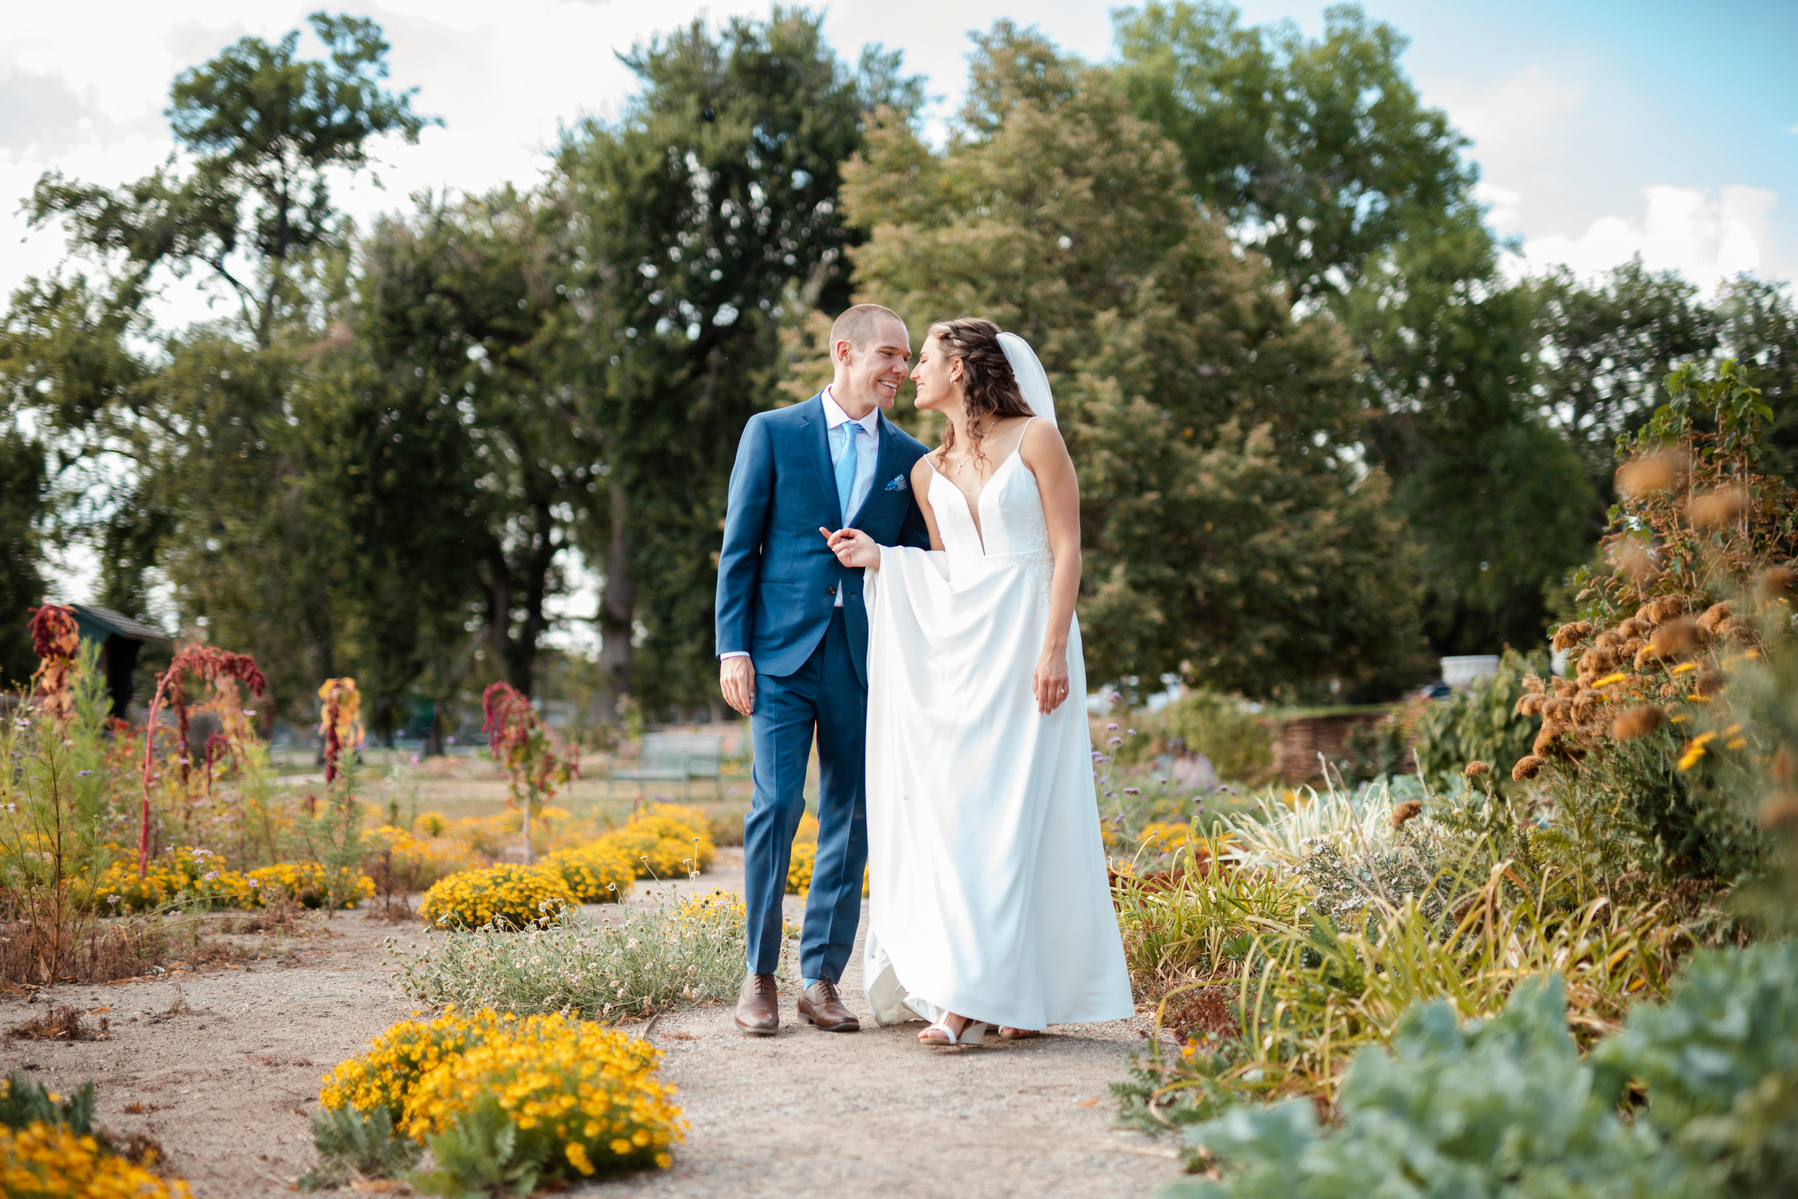 Washington Park Denver. Mount Vernon Garden Wedding. Elopement Denver. Wedding Photography Denver